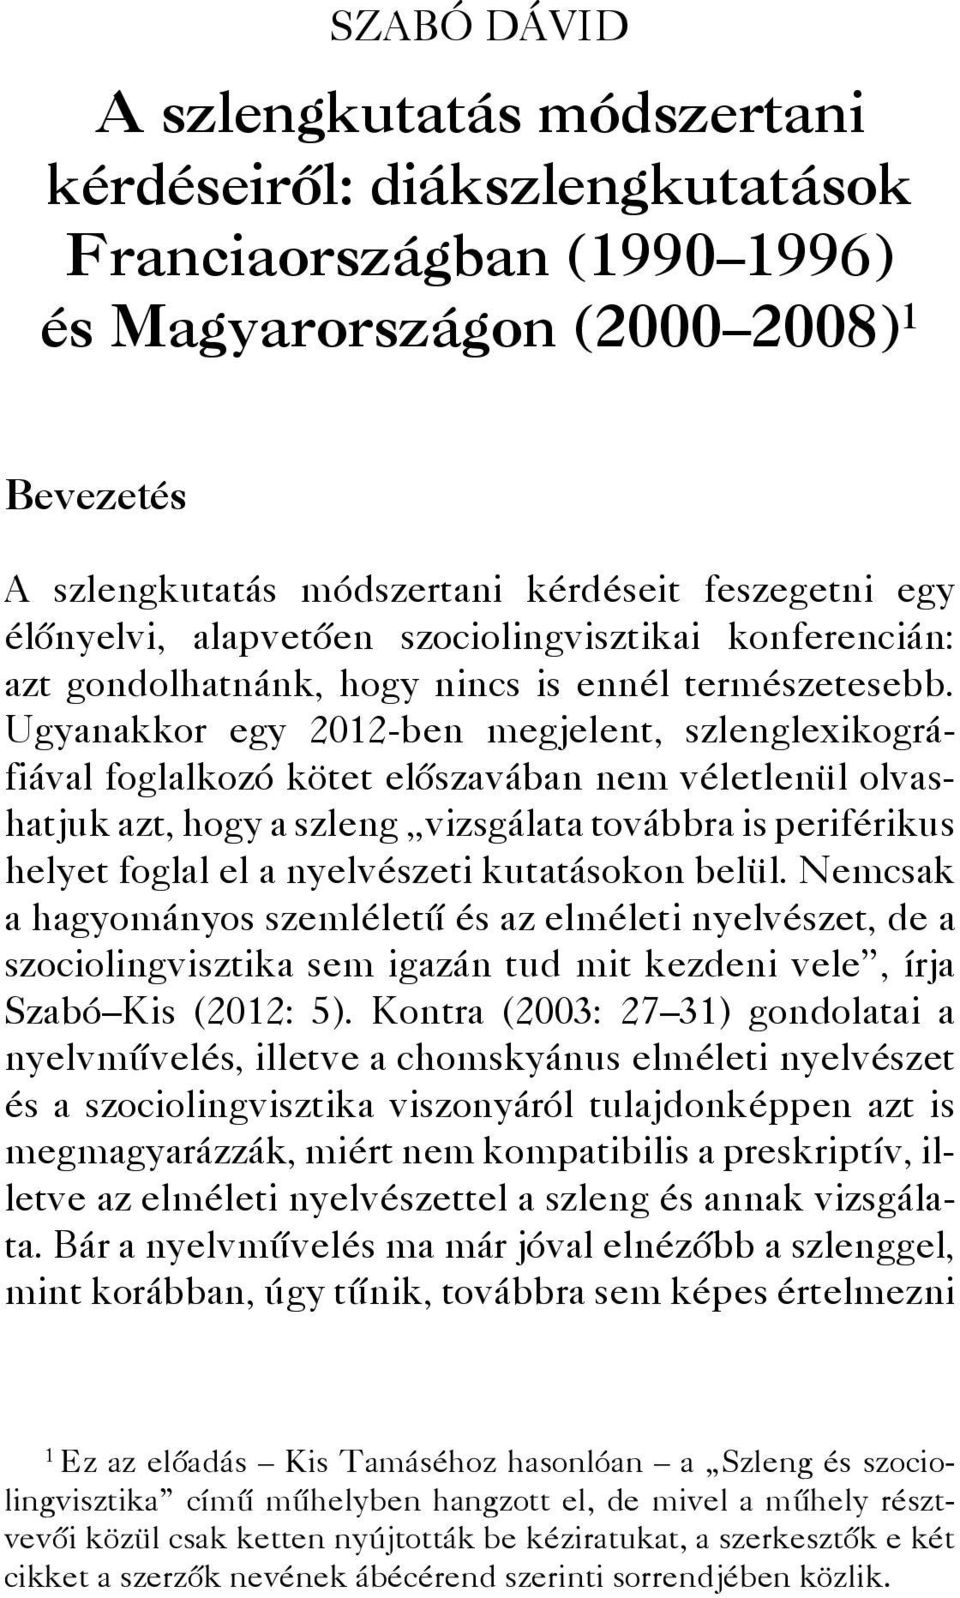 Ugyanakkor egy 2012-ben megjelent, szlenglexikográfiával foglalkozó kötet előszavában nem véletlenül olvashatjuk azt, hogy a szleng vizsgálata továbbra is periférikus helyet foglal el a nyelvészeti